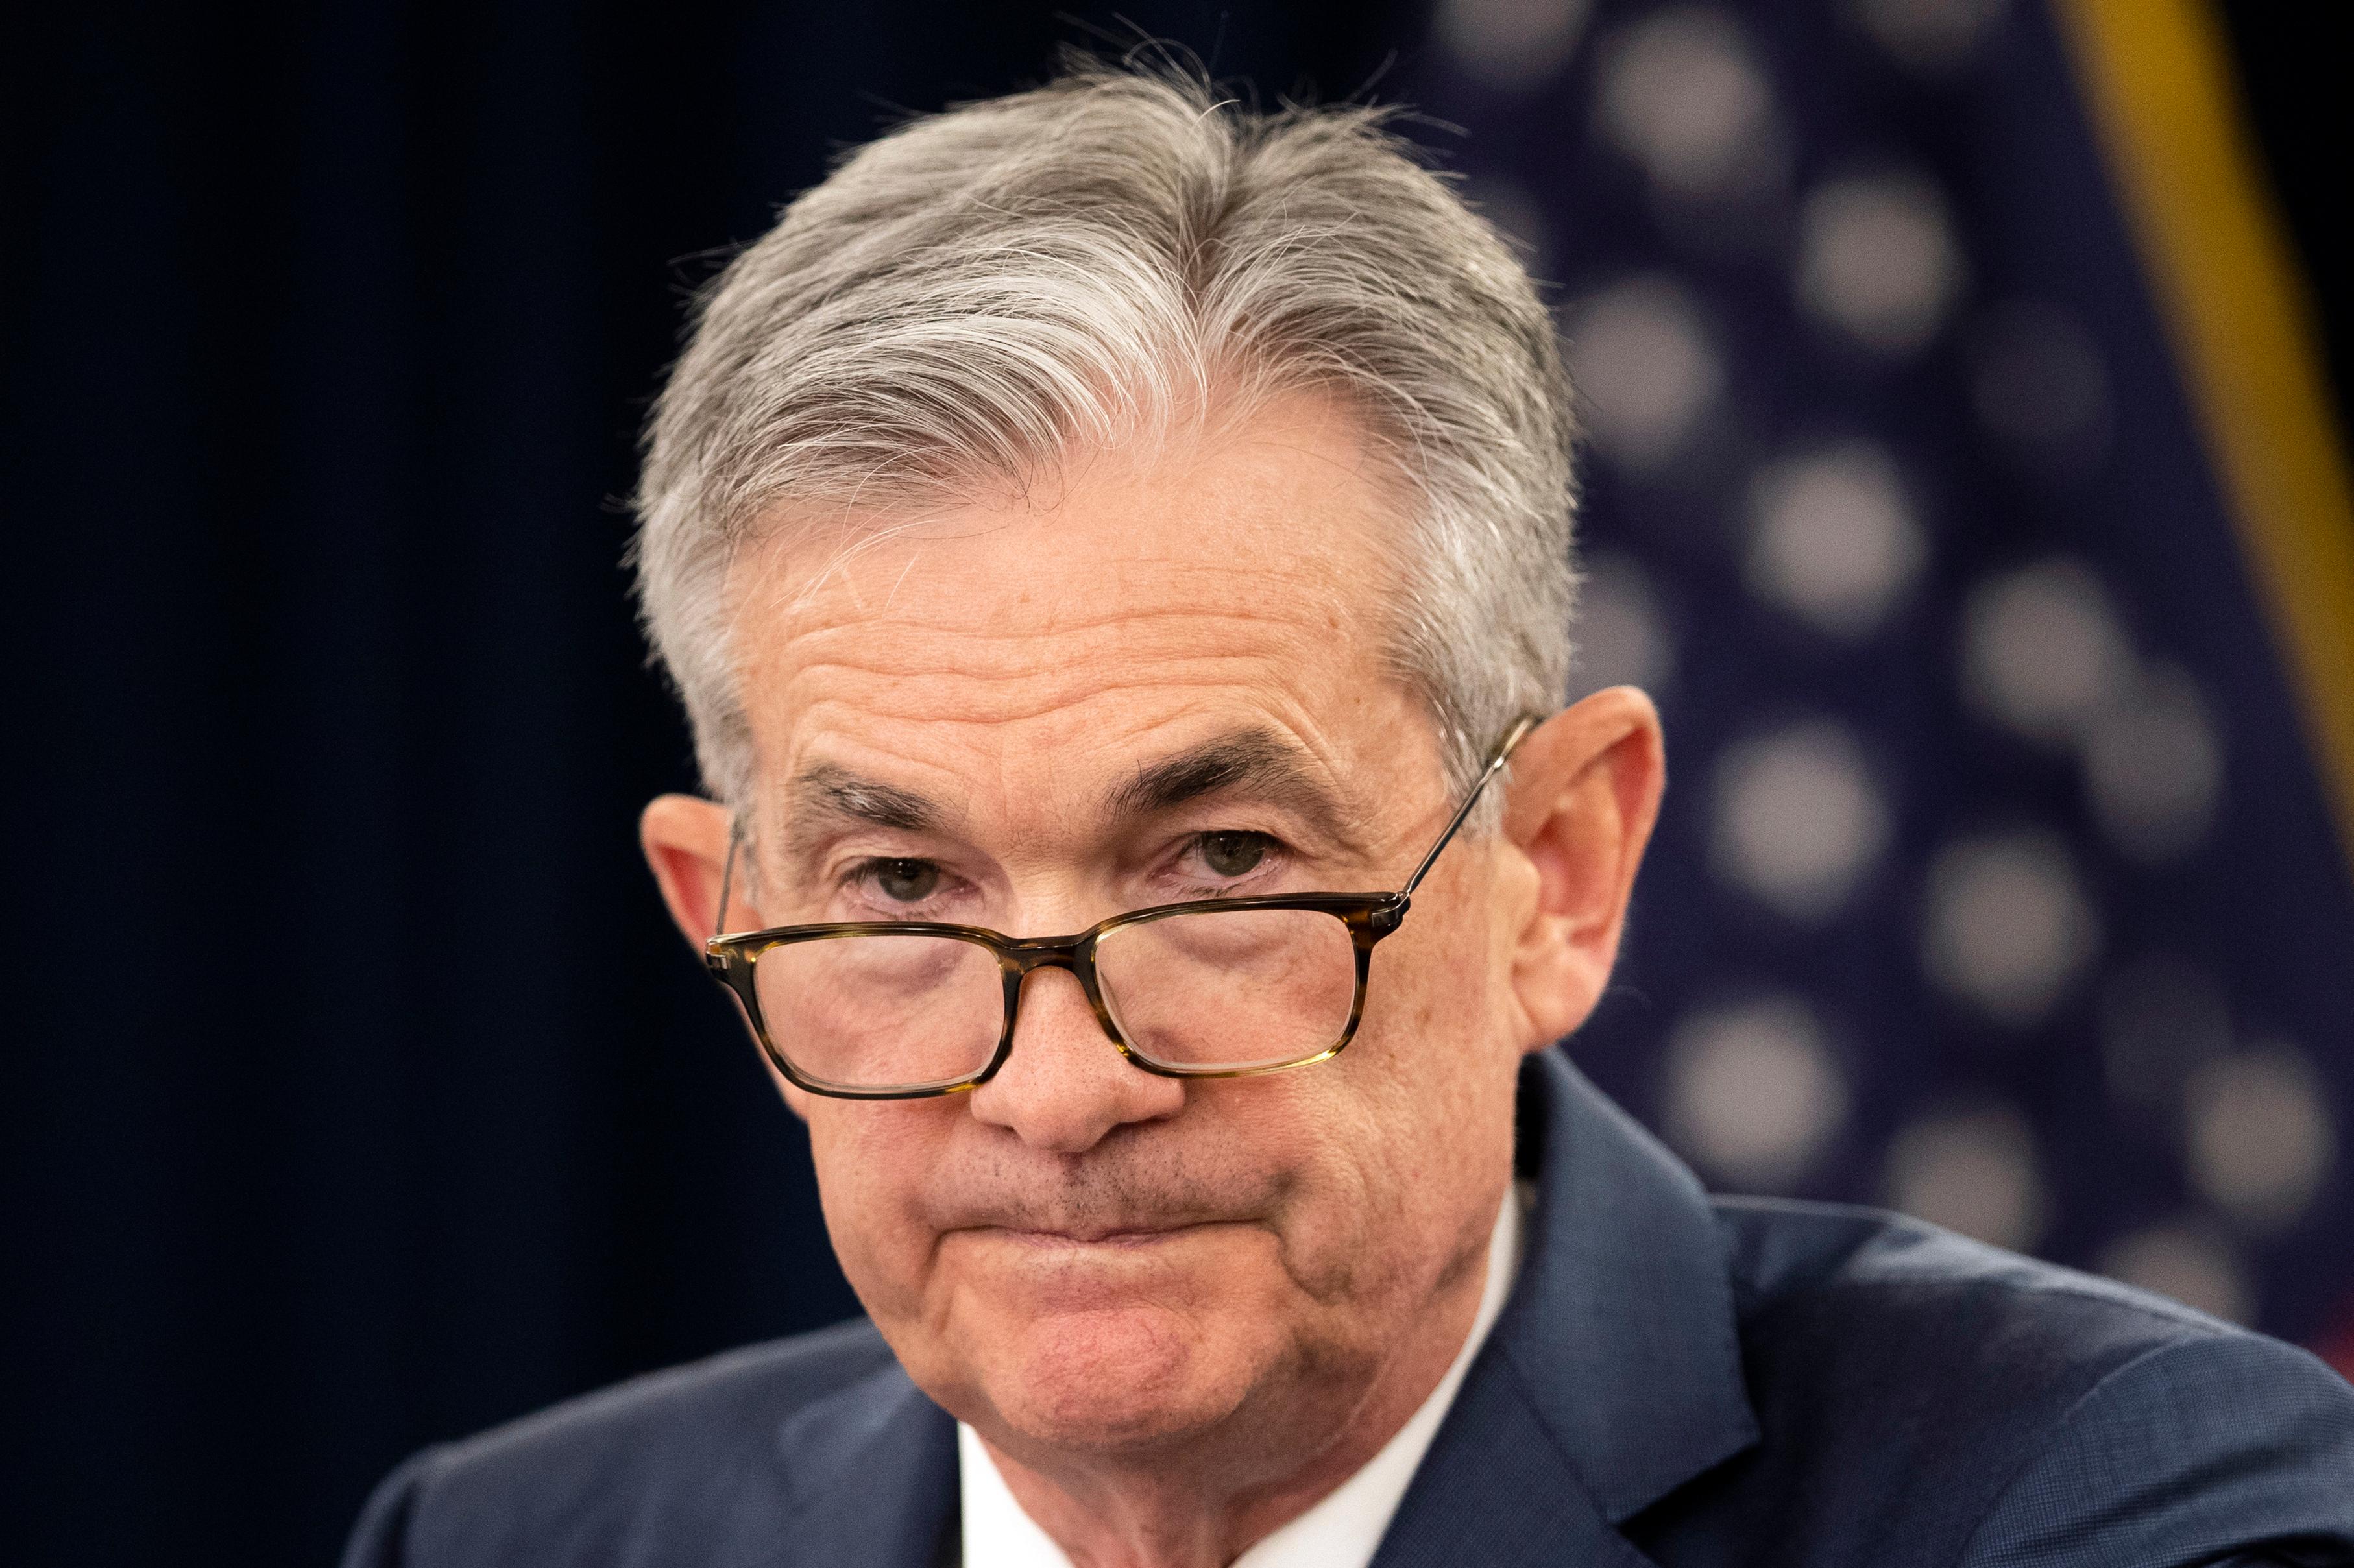 Det har kommit en ny laddning inflationssiffror för USA:s centralbank, med chefen Jerome Powell, att förhålla sig till i sin räntepolitik. Arkivbild. Foto: Manuel Balce Ceneta AP/TT